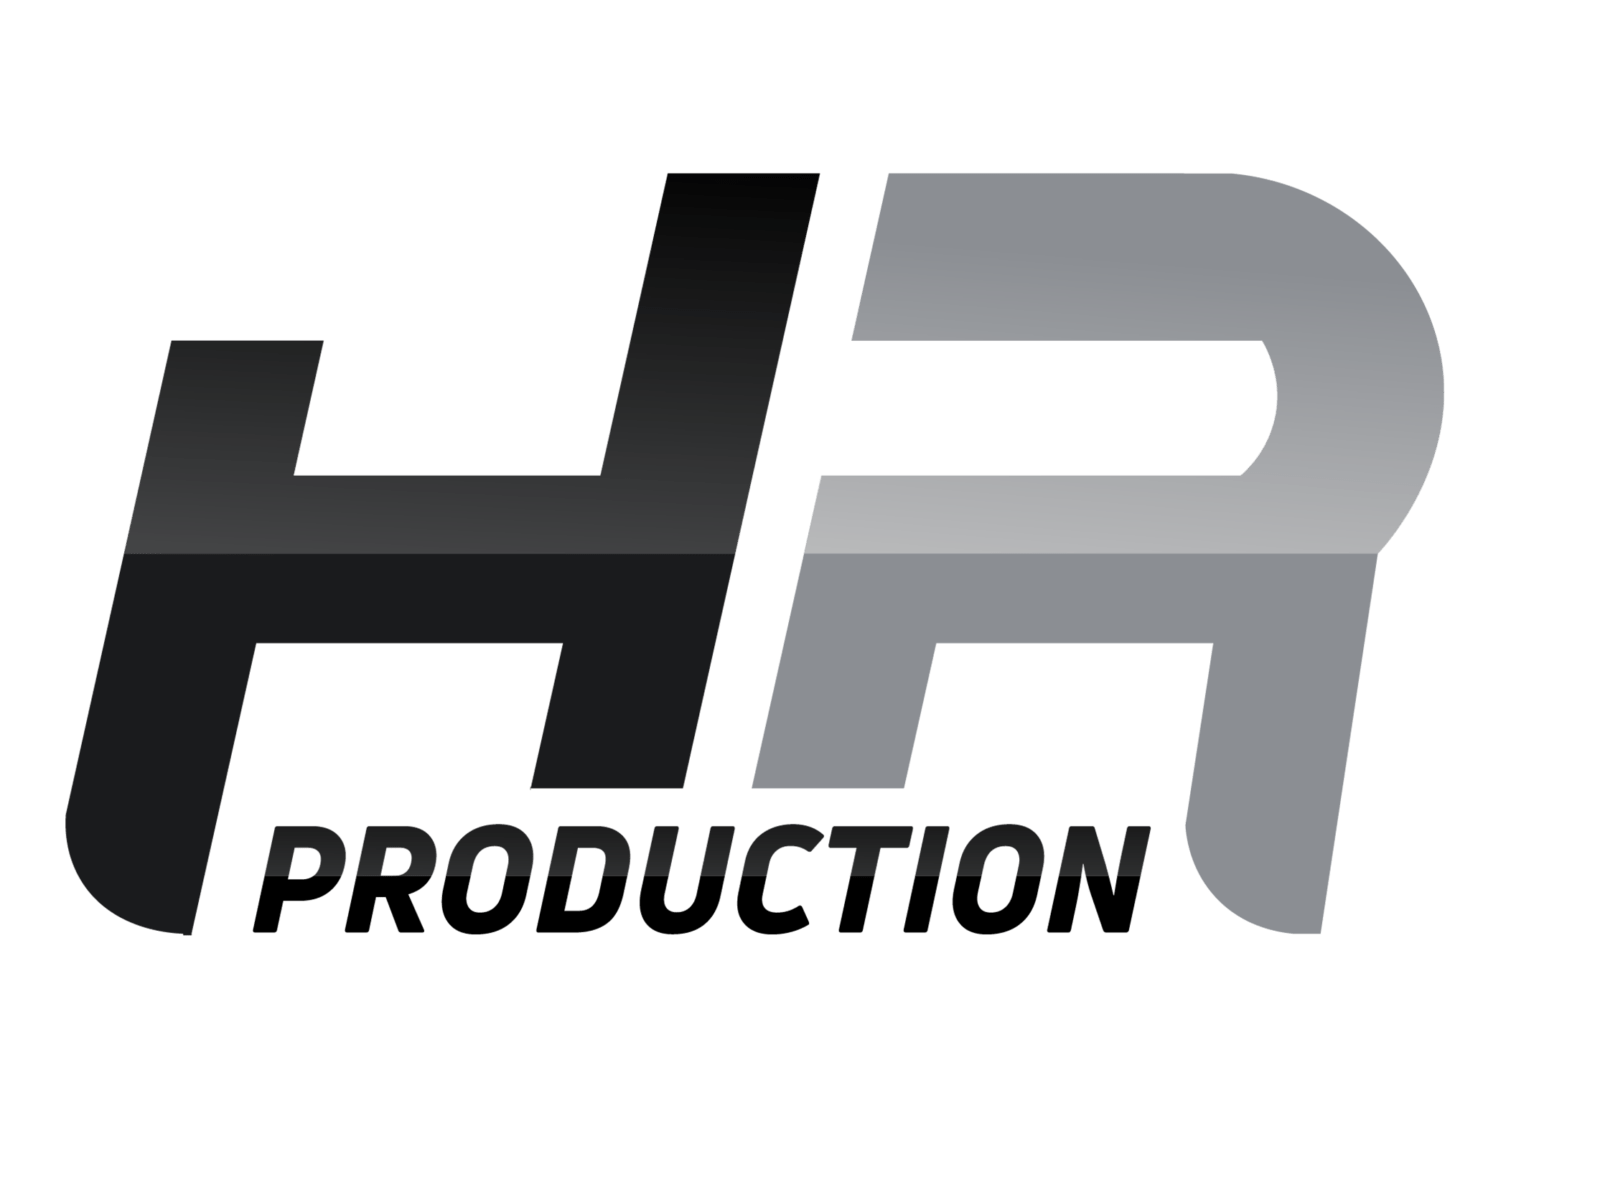 HR Production